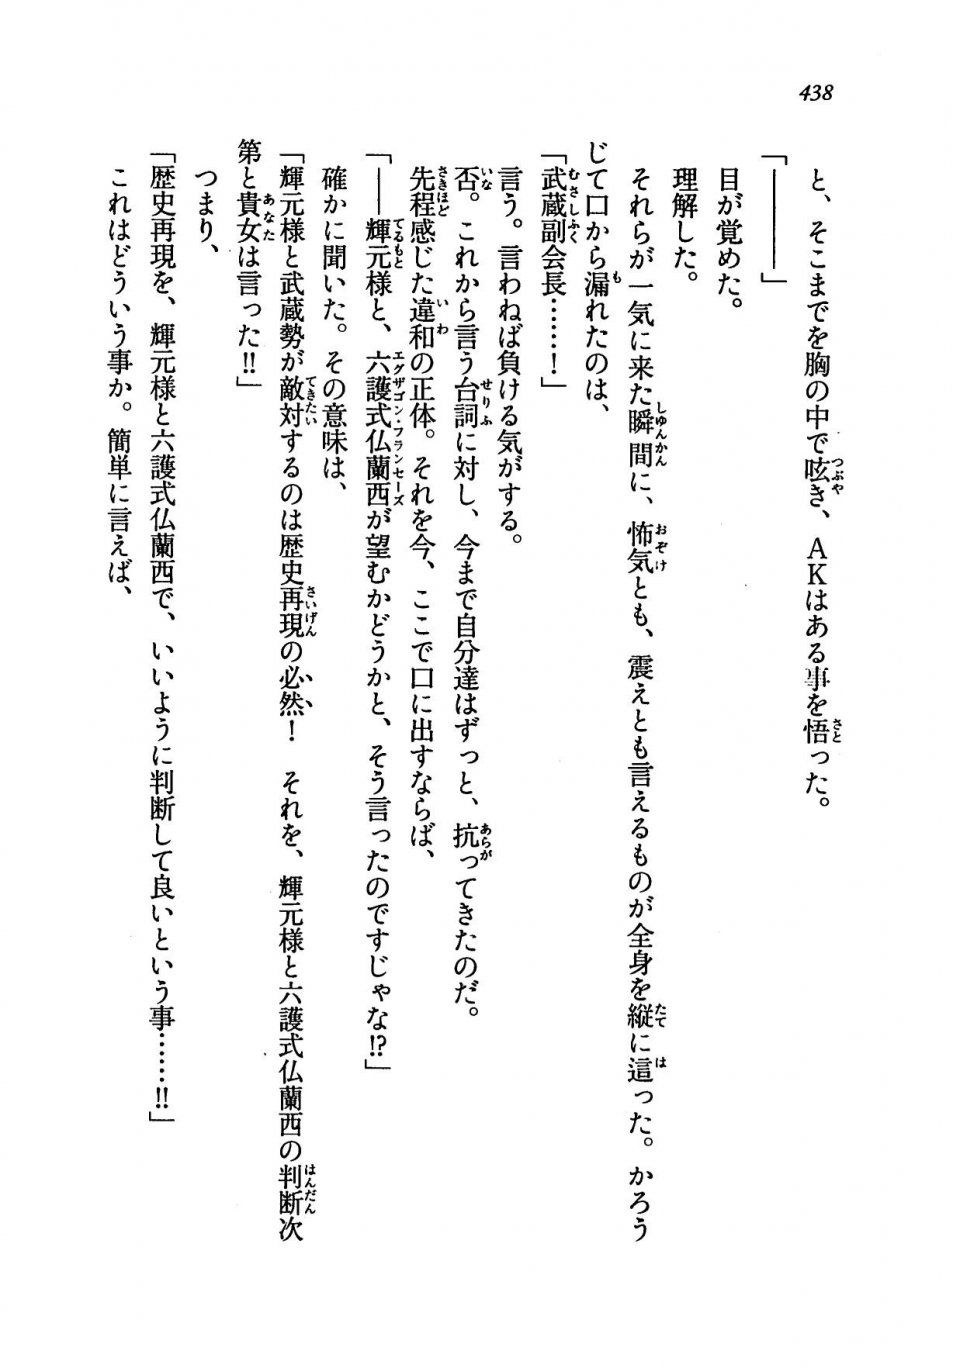 Kyoukai Senjou no Horizon LN Vol 19(8A) - Photo #438